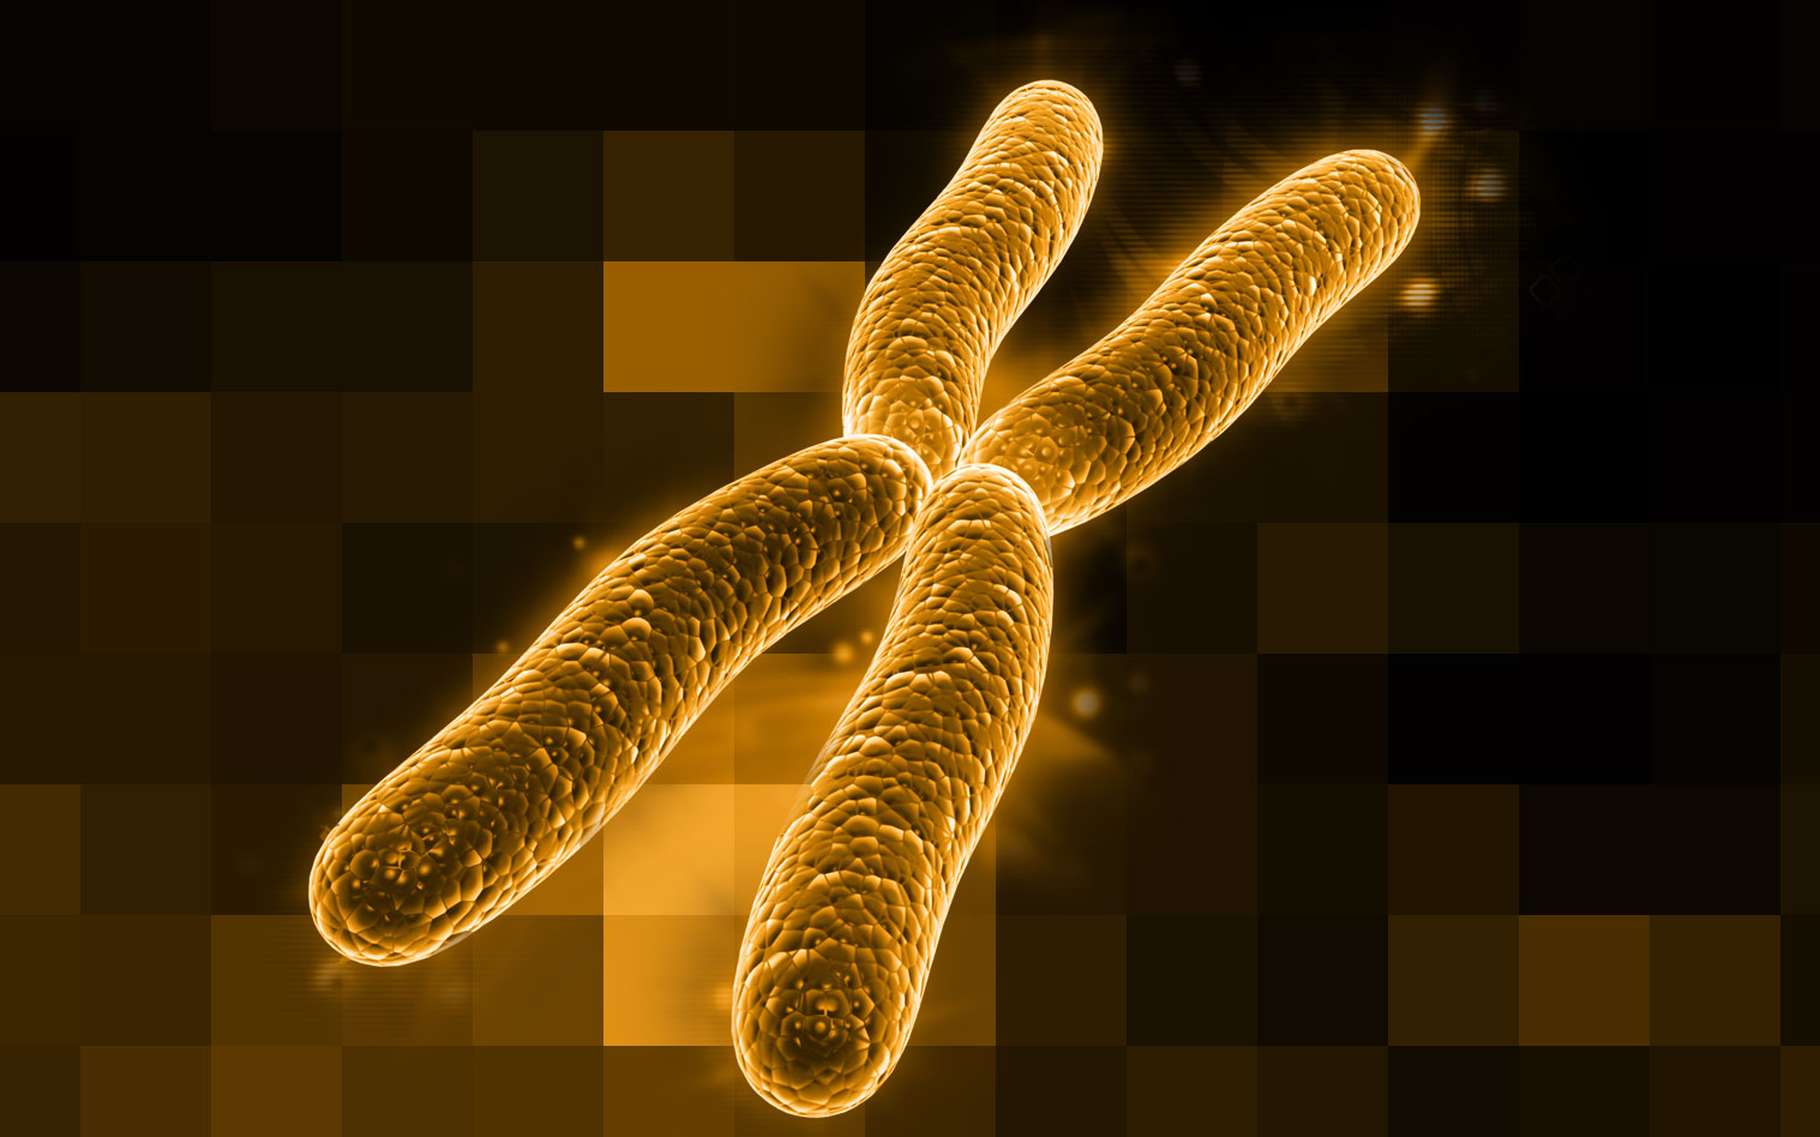 50 chromosome. Хромосома. Х И У хромосомы. Изображение хромосомы. Хромосомы картинки.